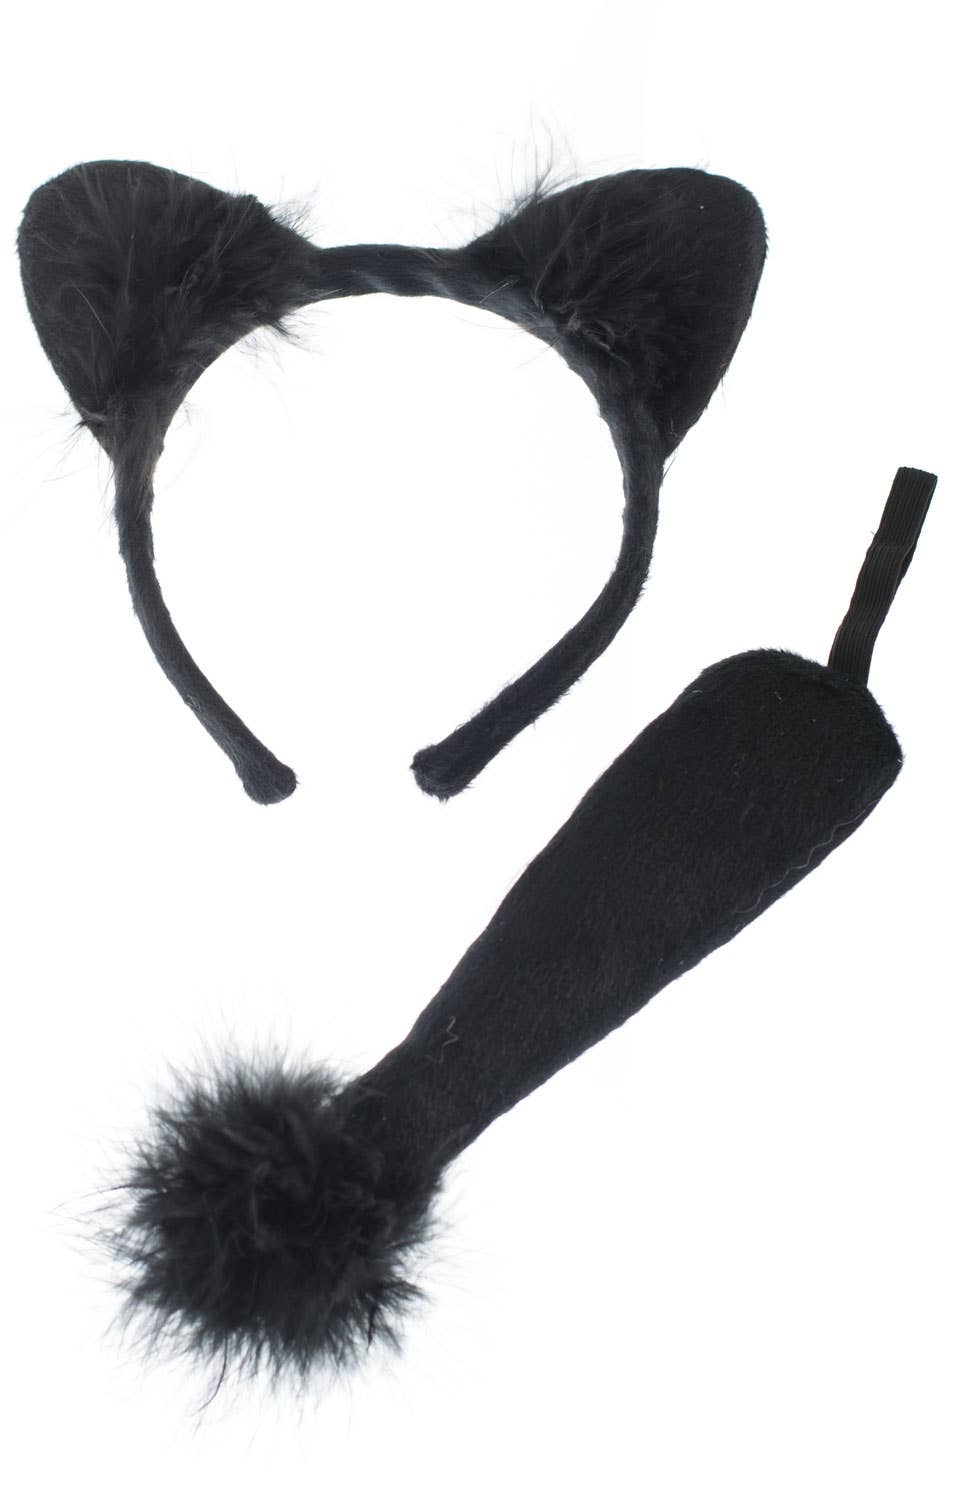 Black Plush Cat Ears And ail Costume Kit